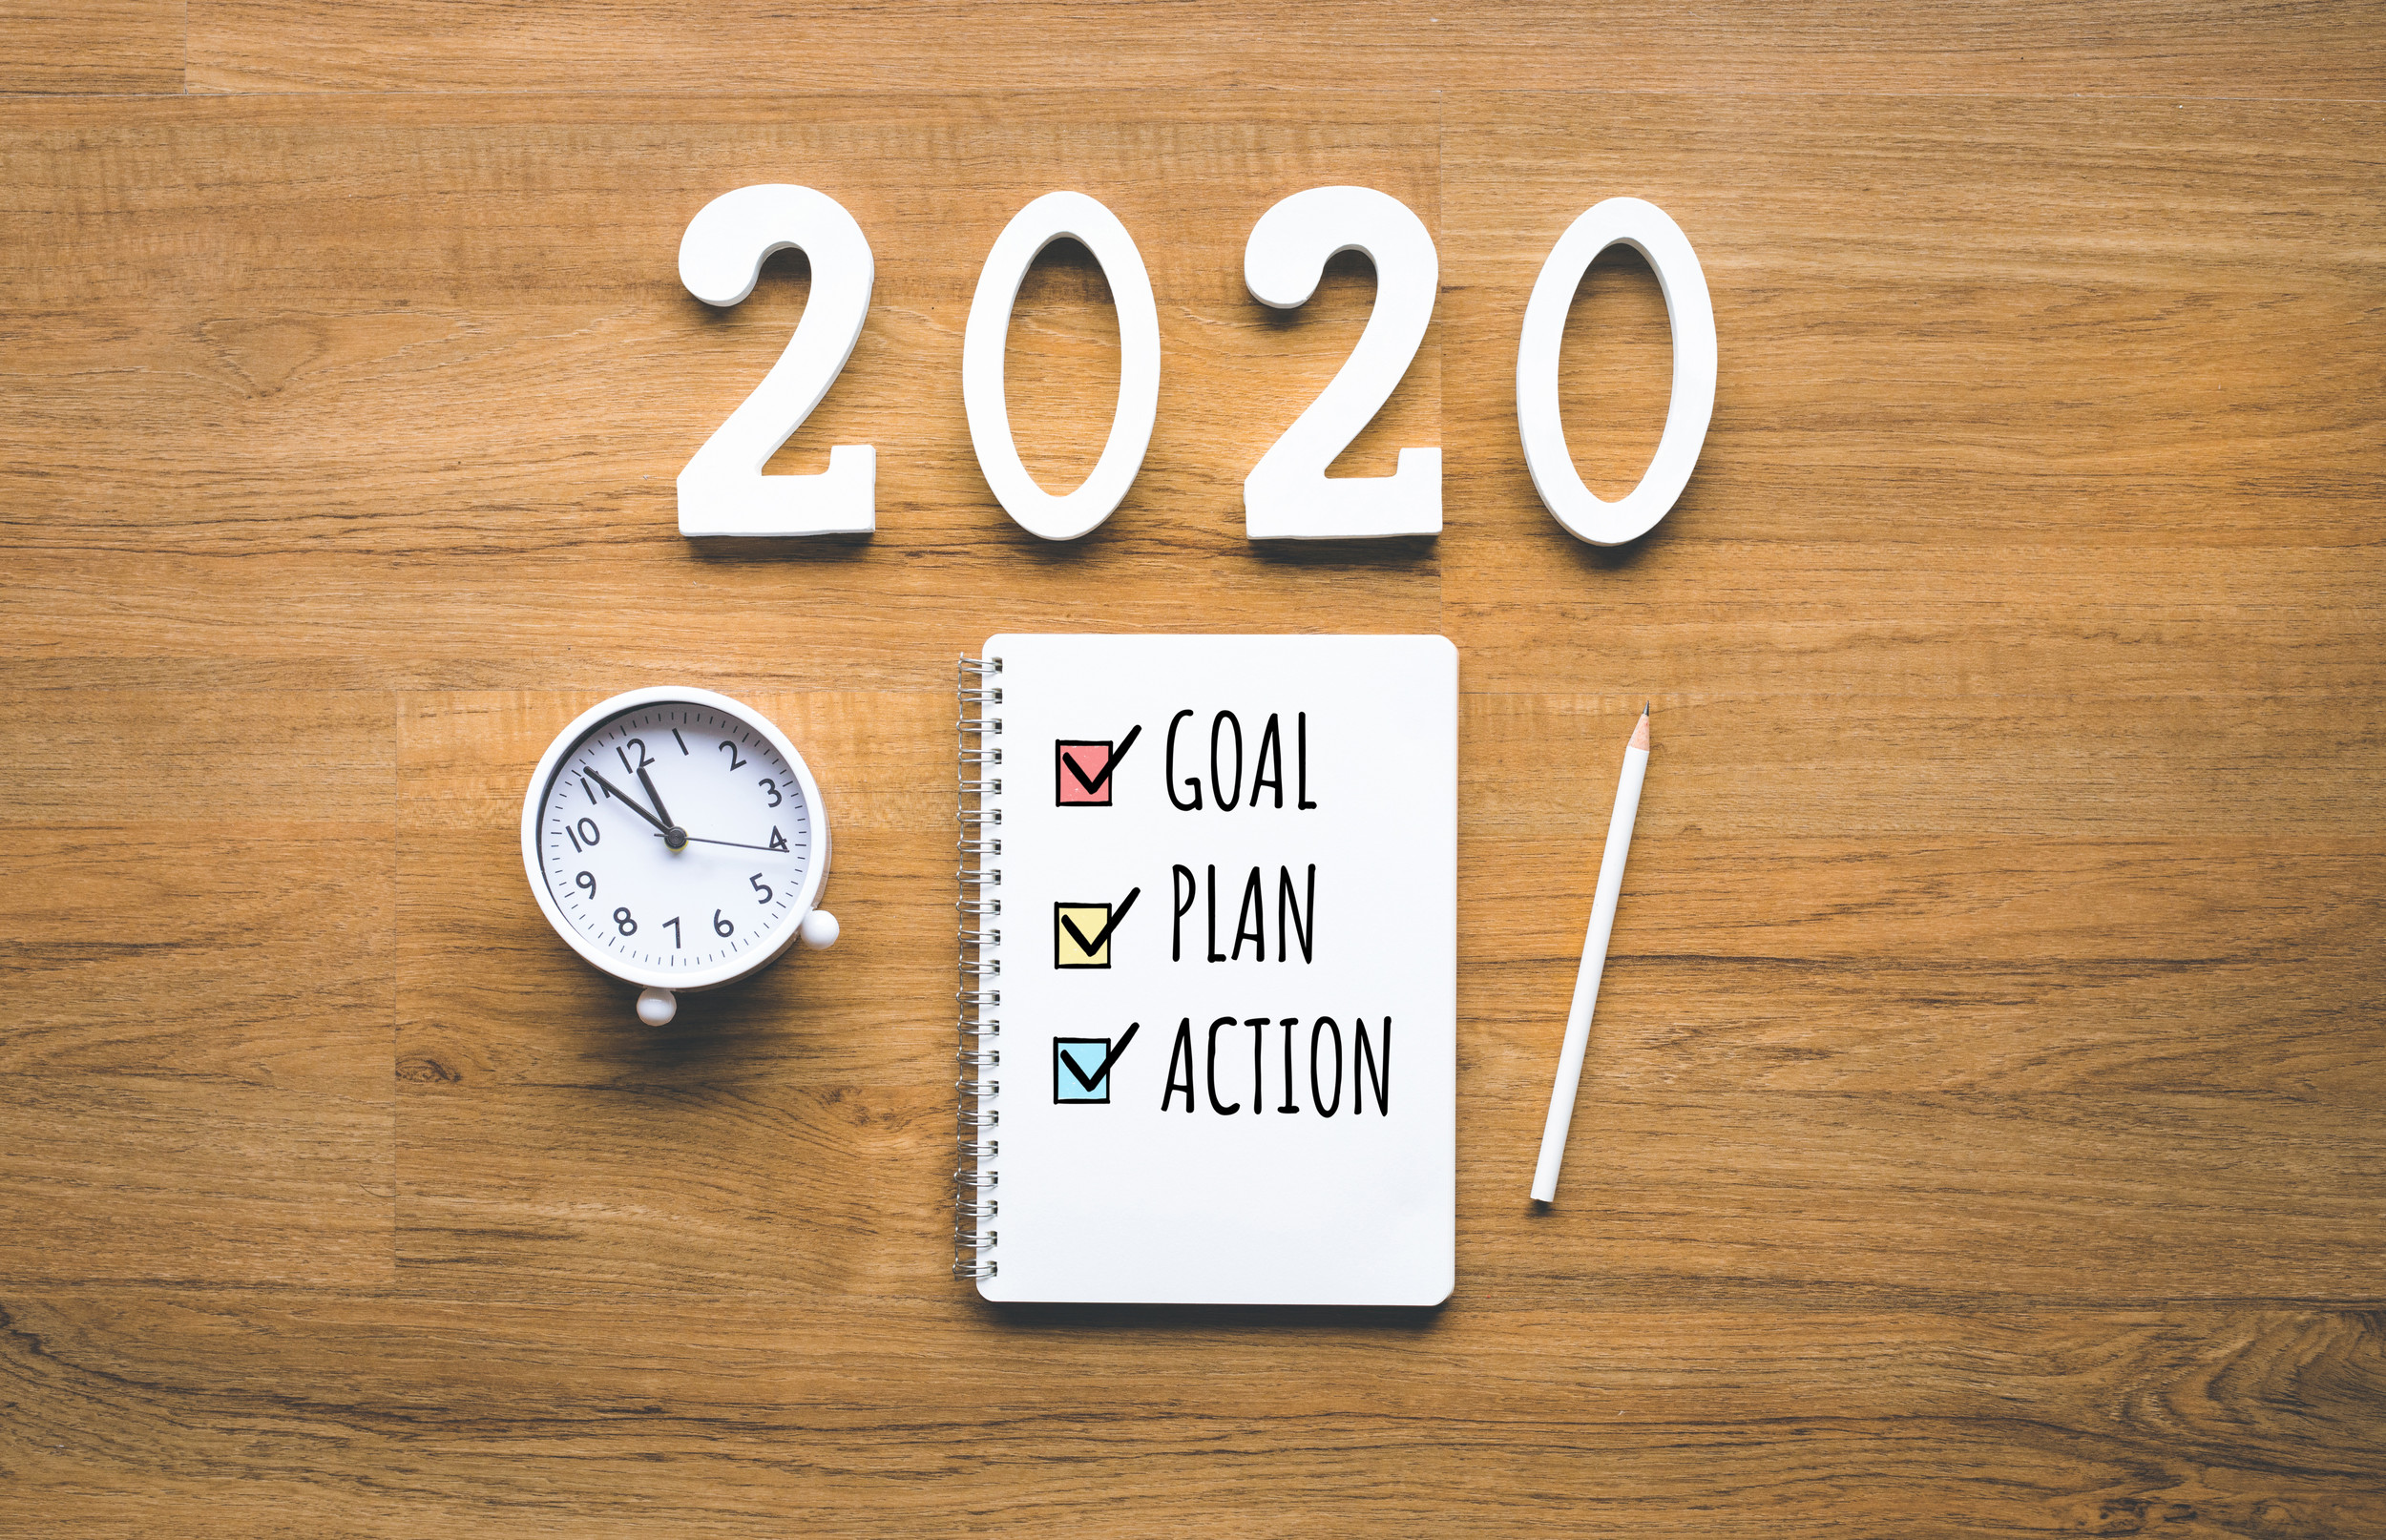 Tujuan tahun baru 2020, rencana, teks tindakan pada notepad dengan latar belakang kayu. Tantangan bisnis. Ide inspirasi